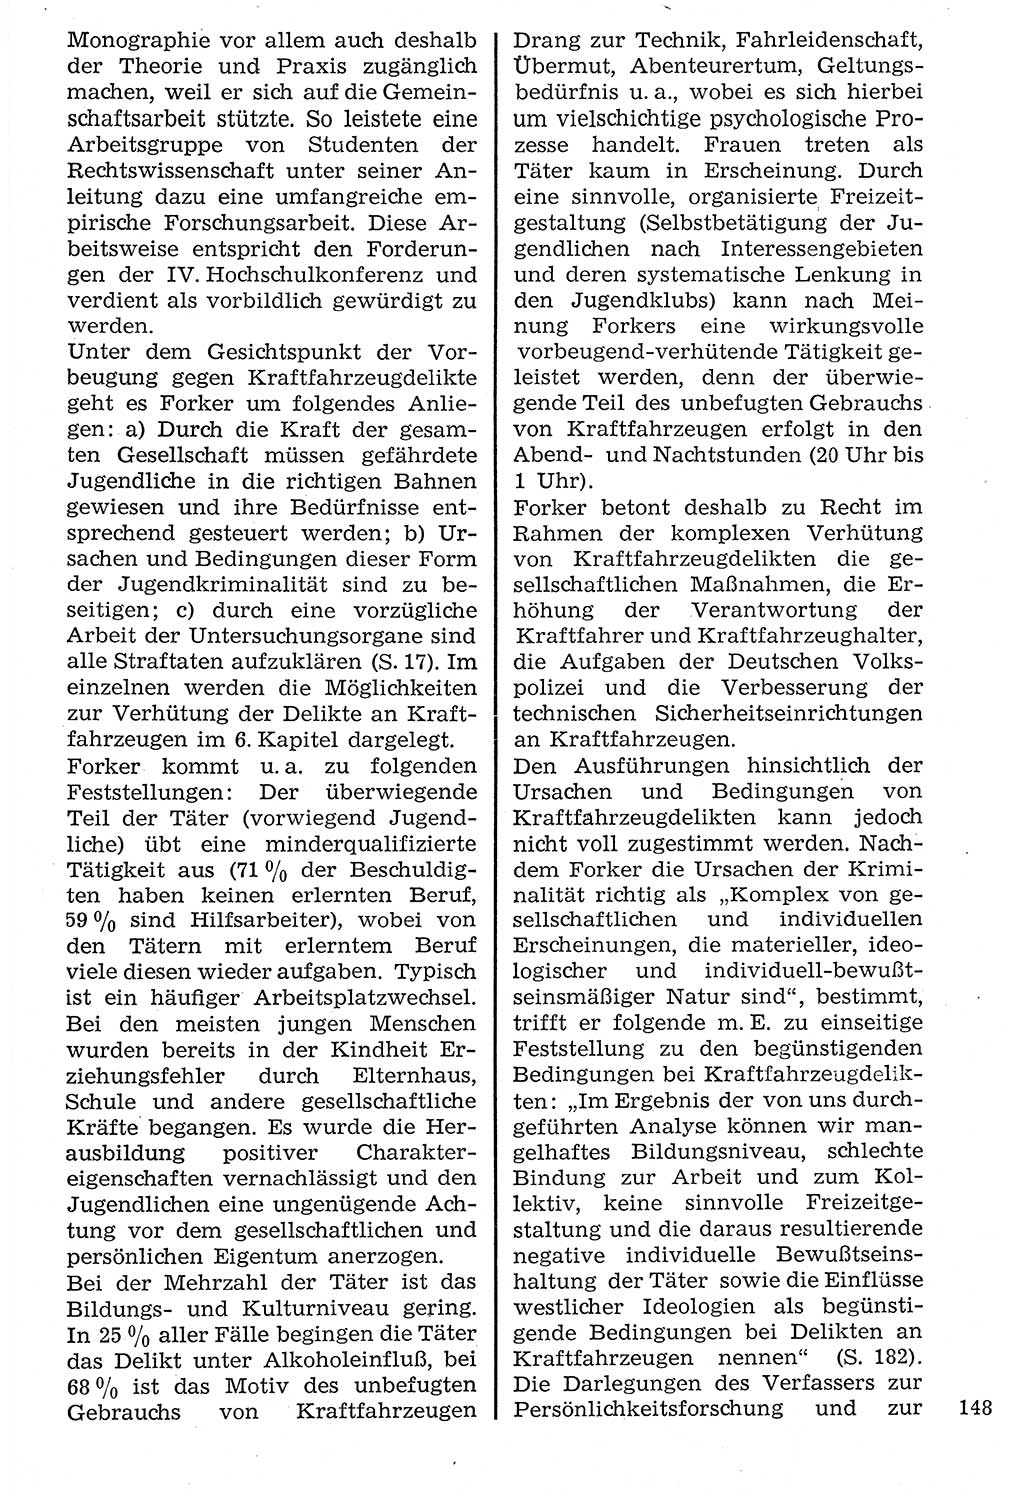 Staat und Recht (StuR), 17. Jahrgang [Deutsche Demokratische Republik (DDR)] 1968, Seite 148 (StuR DDR 1968, S. 148)